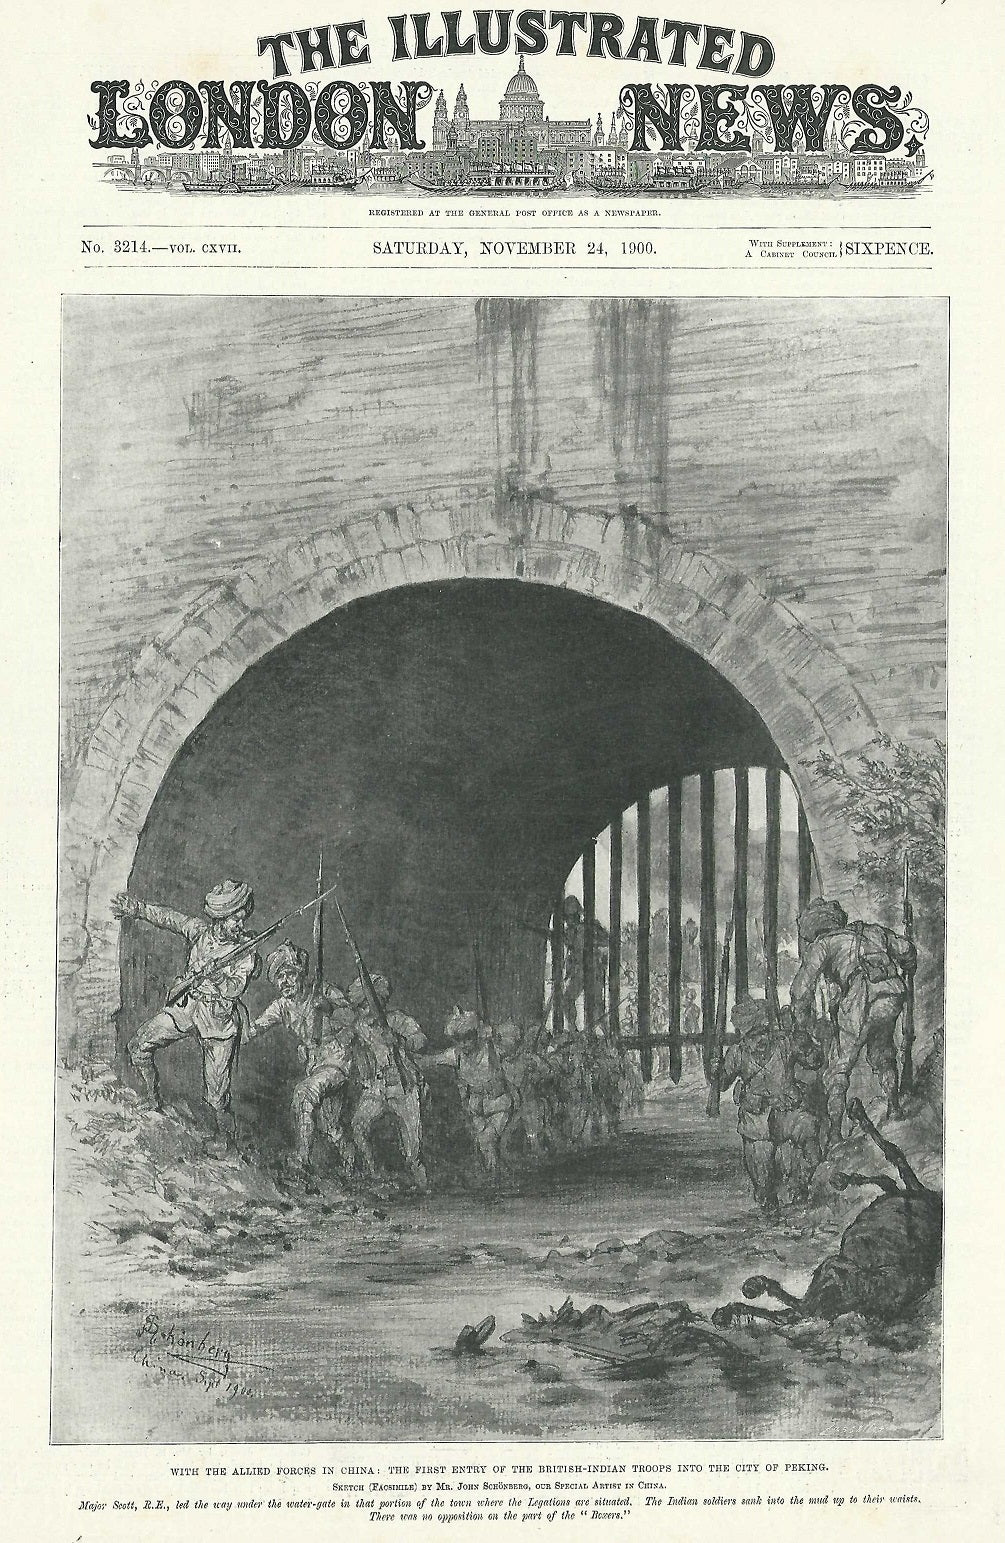 British Indian Army enter Peking during Boxer Rebellion antique print 1900